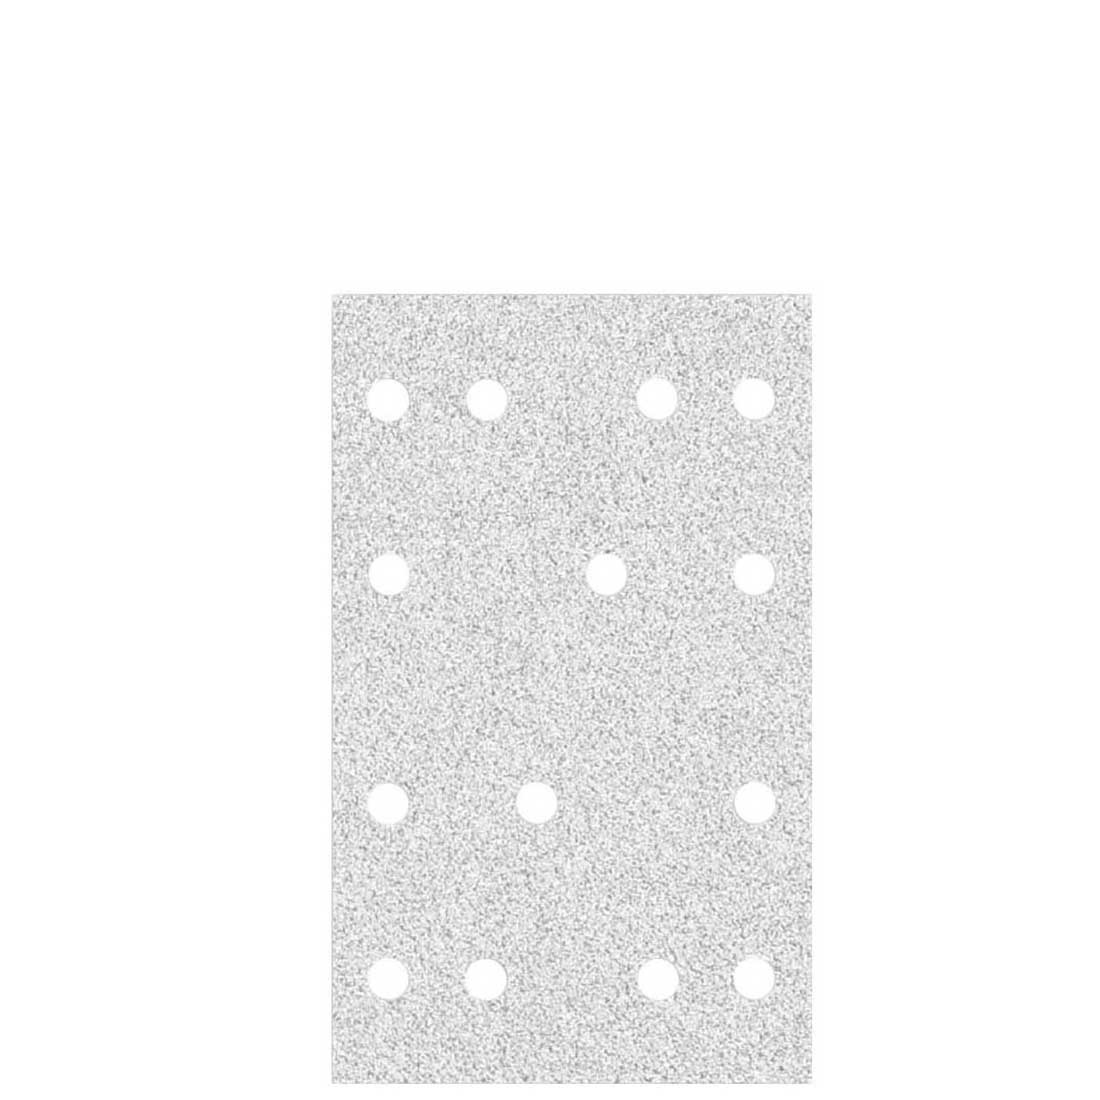 Carte abrasive velcrate MioTools per levigatrici orbitali, G40–400, 133 x 80 mm / 14 fori / corindone normale con stearato